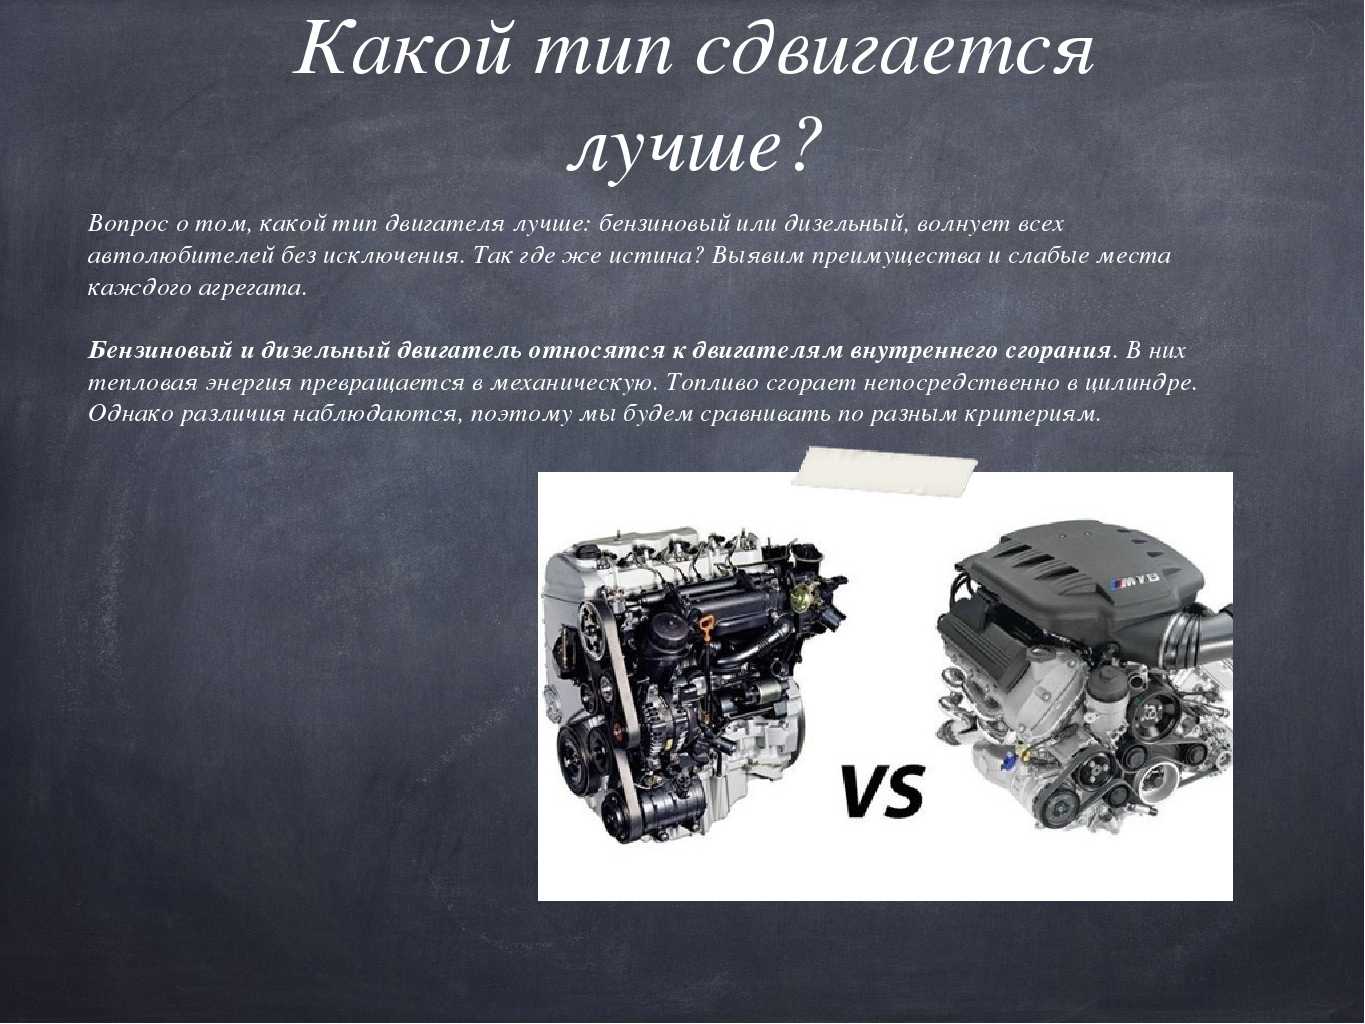 Дизельный или бензиновый двигатель - какой лучше?